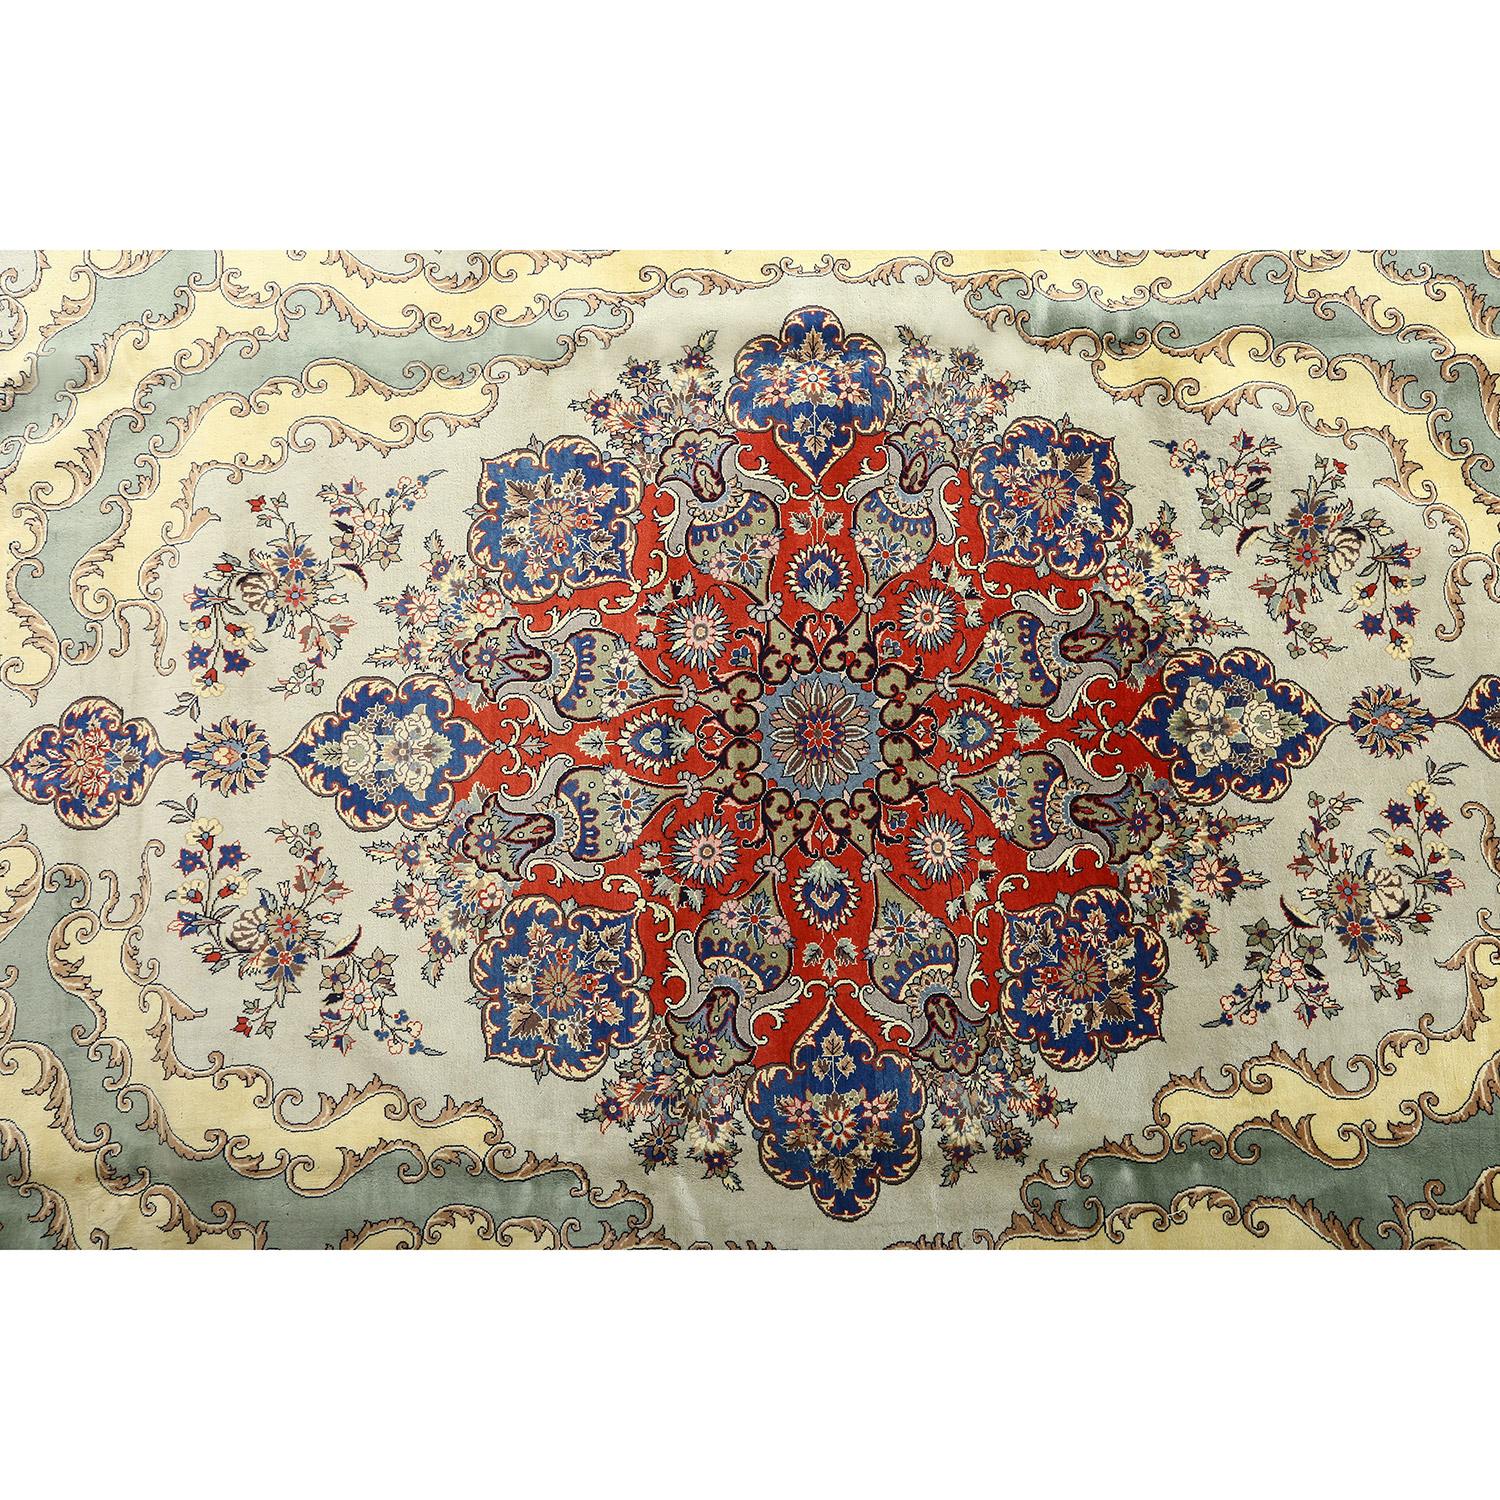 Dieser alte Qom-Arsalani-Teppich ist ein großartiges Beispiel für die Kunstfertigkeit und das handwerkliche Können, die Qom-Teppiche weltberühmt gemacht haben. Mit ihren filigranen Mustern und ihrem exquisiten Design zeigt sie die traditionellen